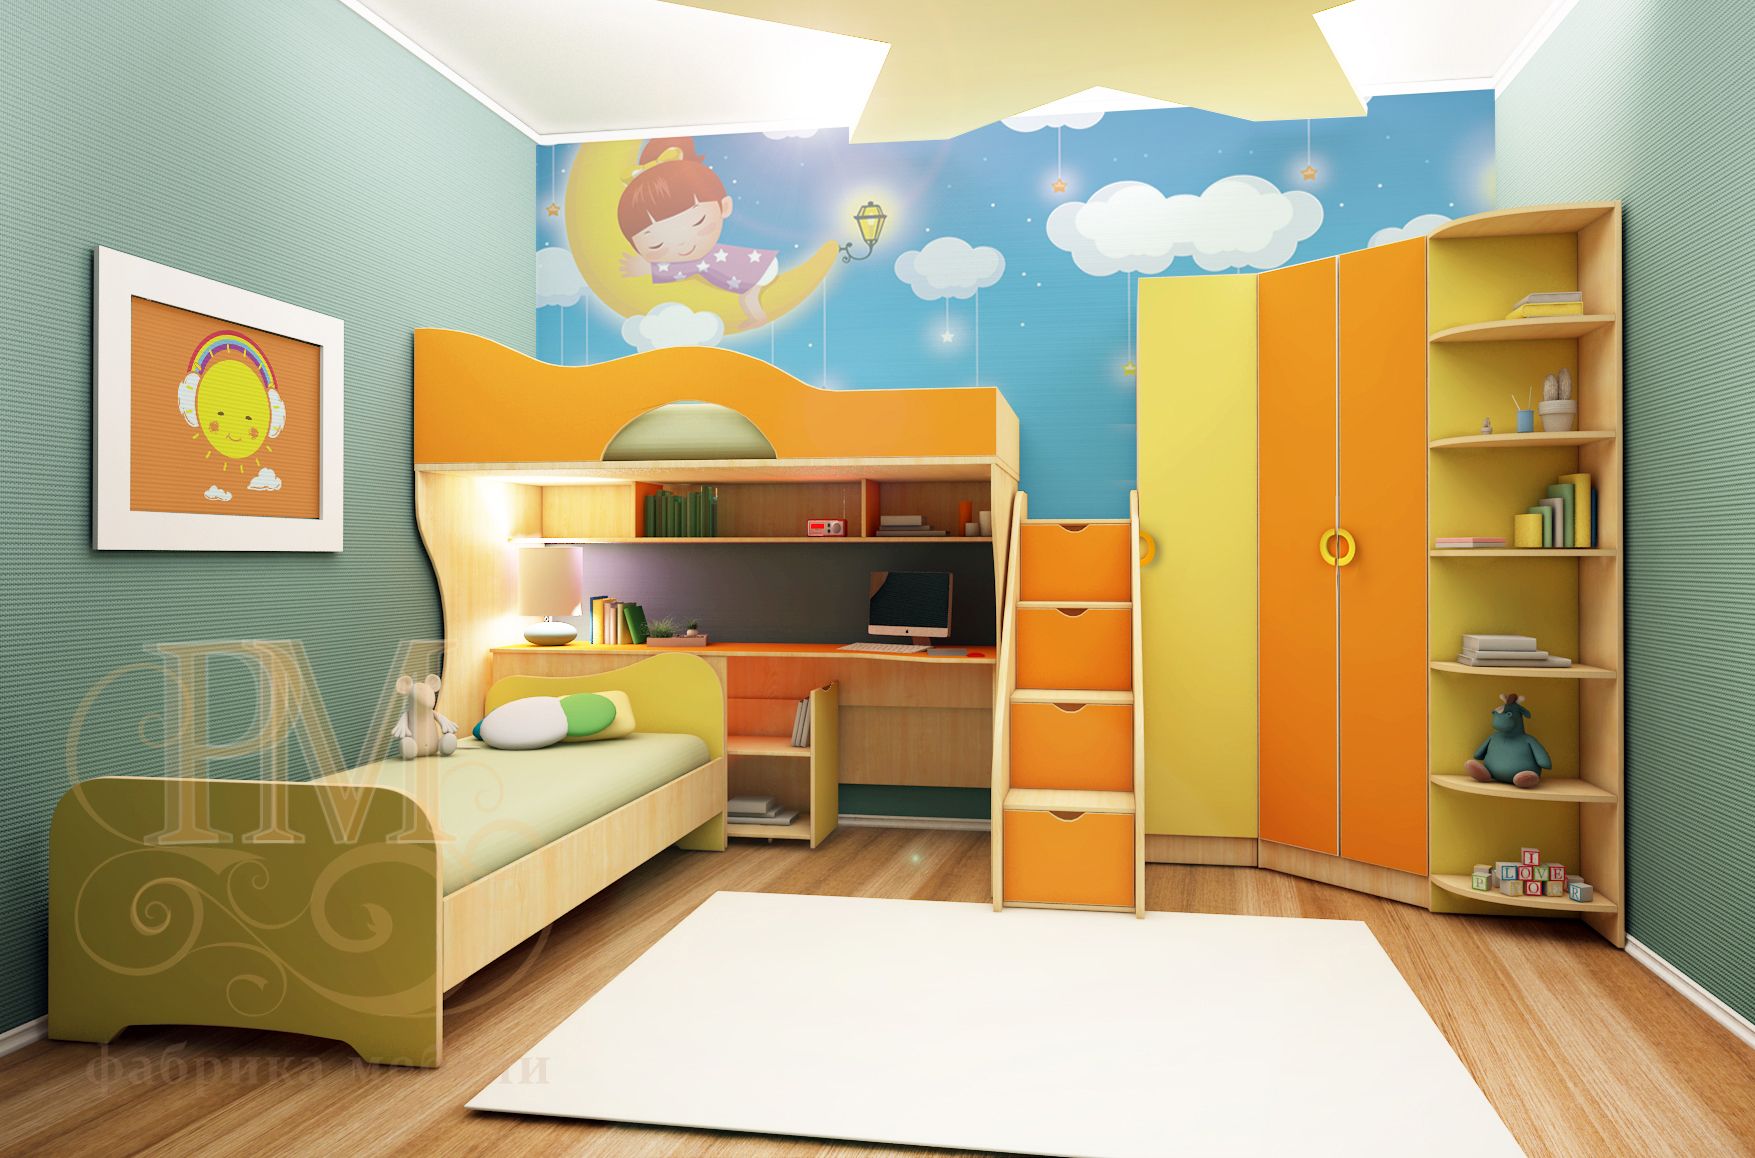 Детская мебель mosmirmebeli gmail com. Детская мебель. Комплект детской мебели. Детская мебель оранжевого цвета. Детская мебель оранжево зеленая.